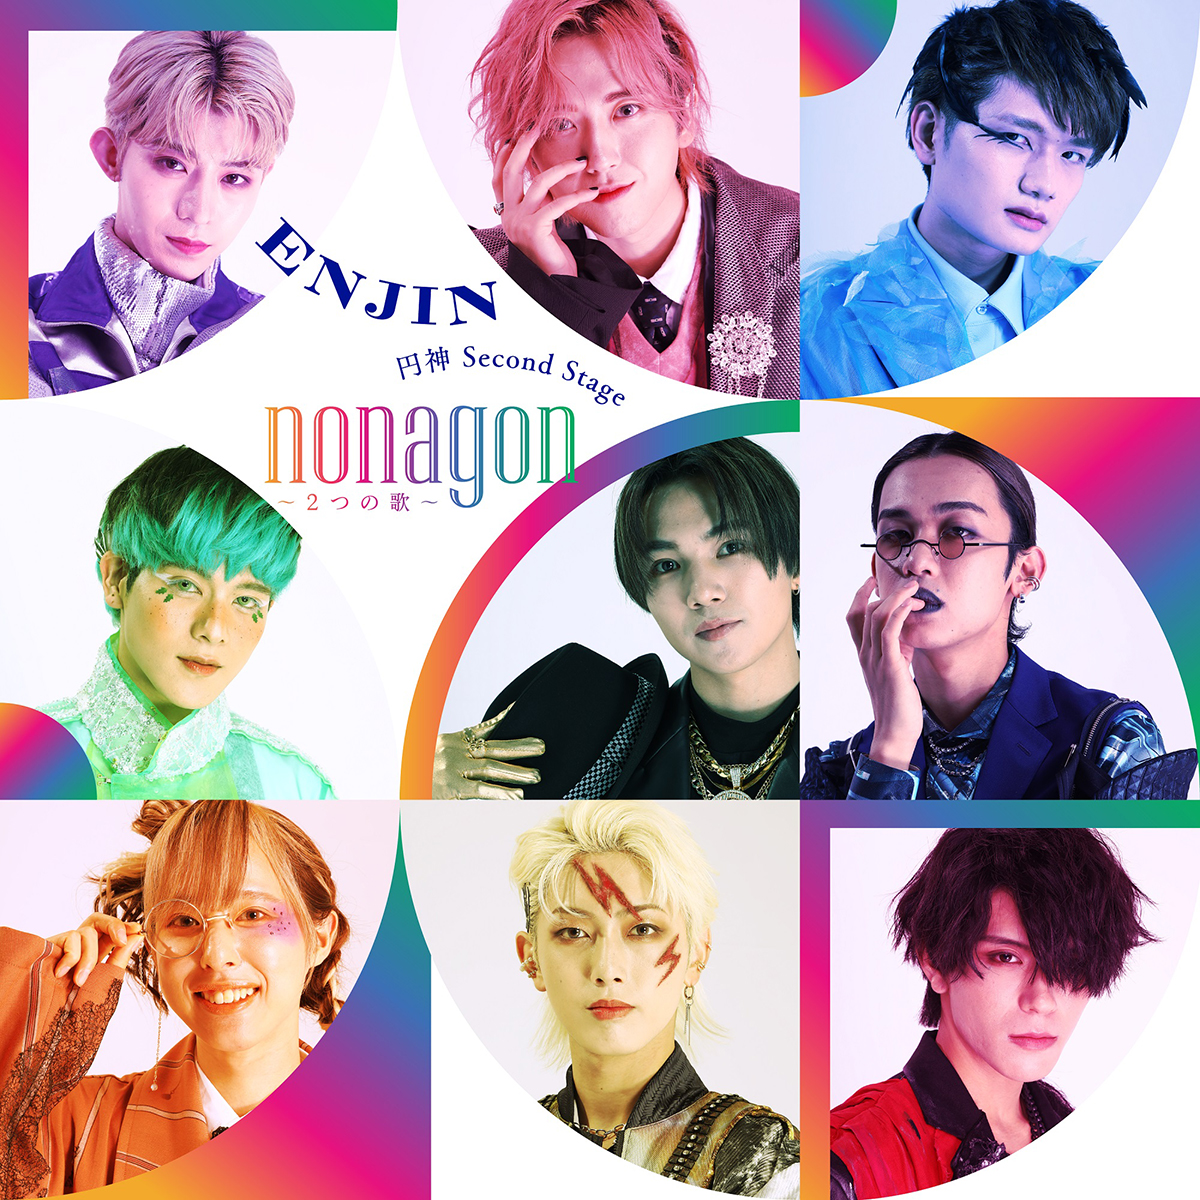 円神 Digital Single「円神 Second Stage『nonagon〜2つの歌～』」